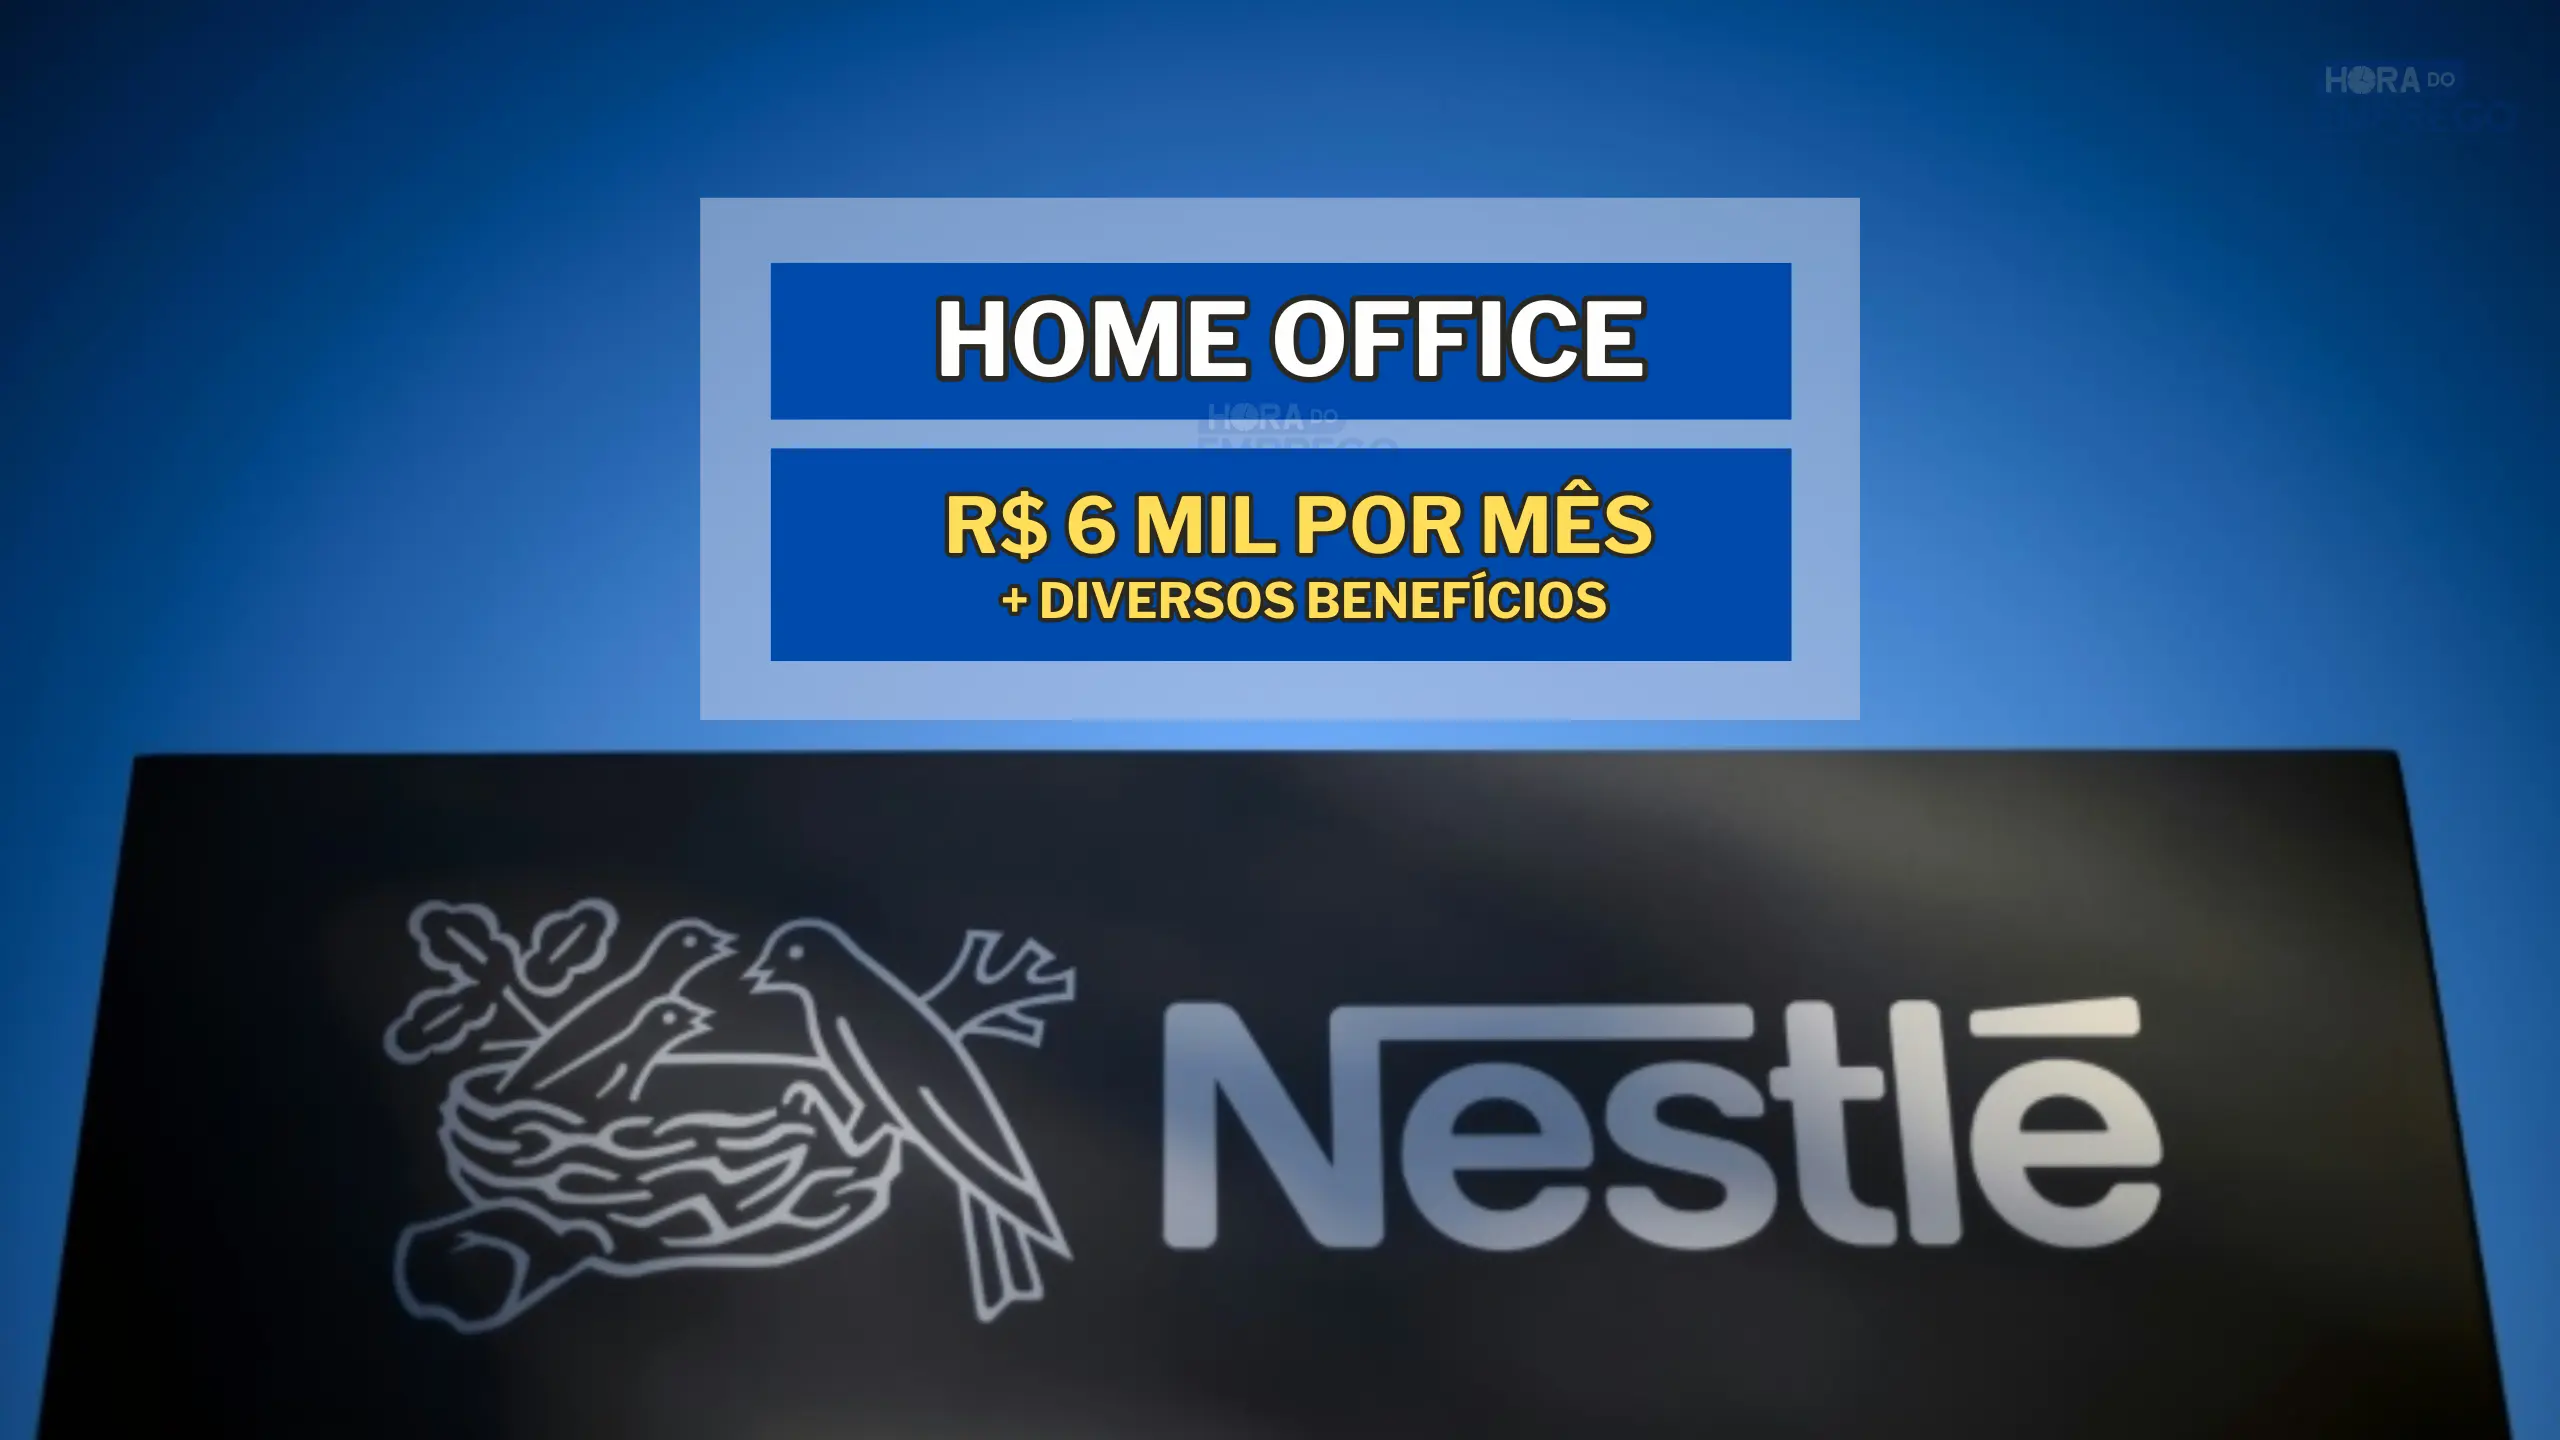 Nestlé abre vaga HOME OFFICE com salário de até 6 MIL por mês no setor de Nutrição: Veja como se inscrever